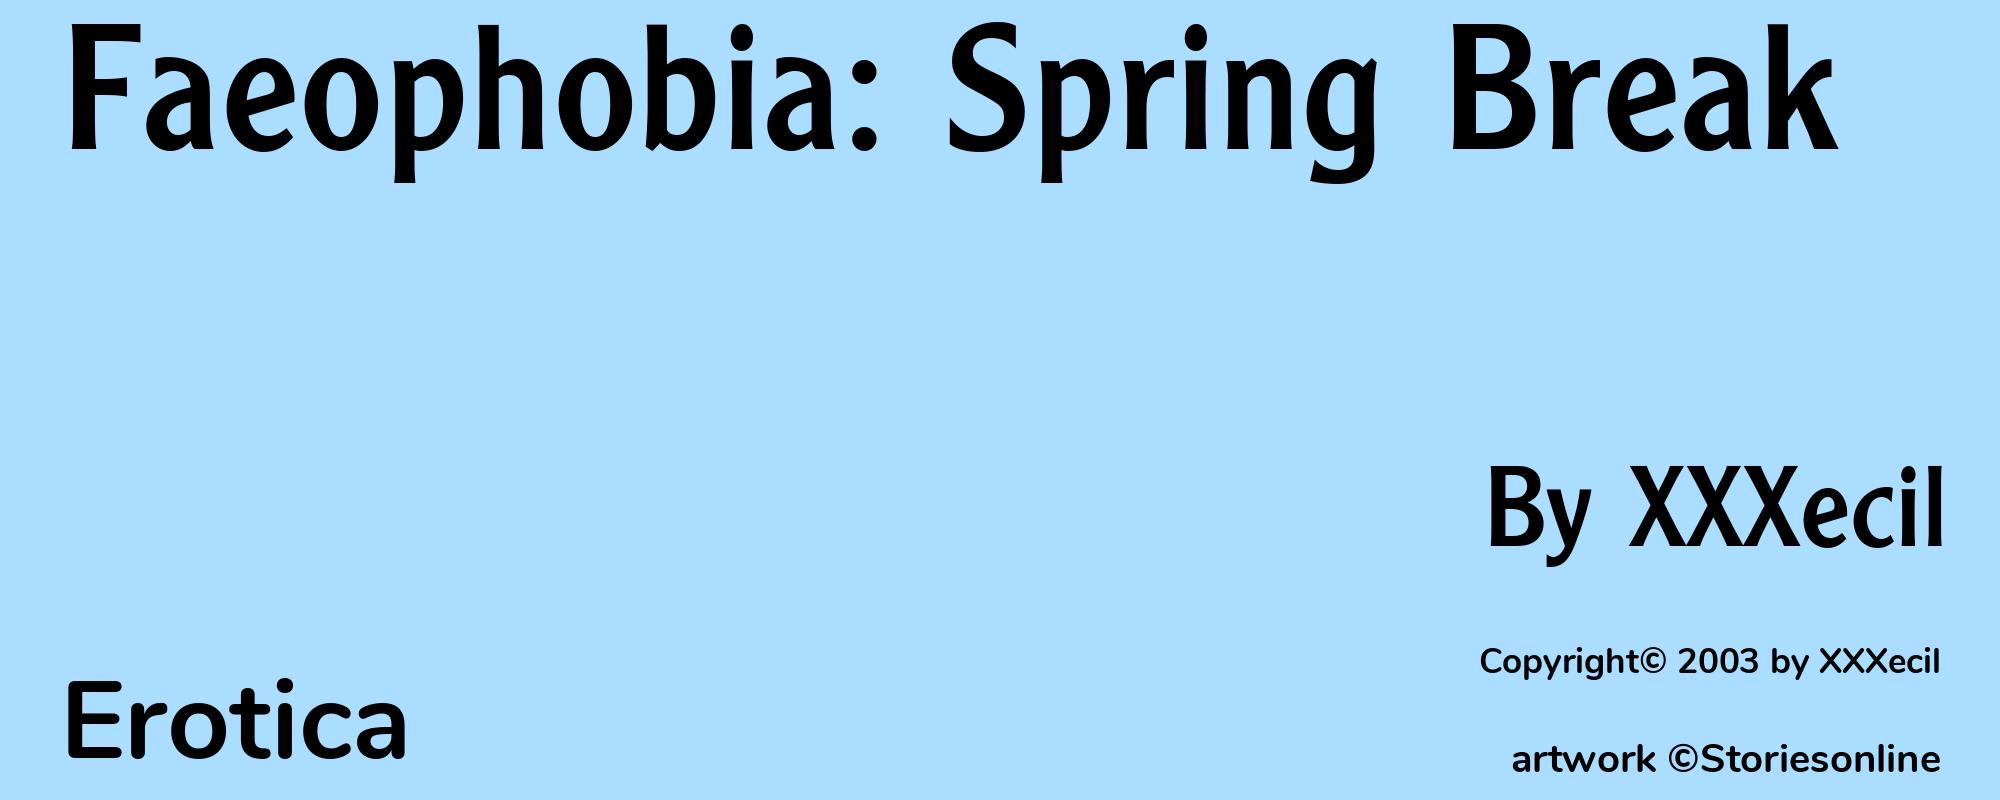 Faeophobia: Spring Break - Cover